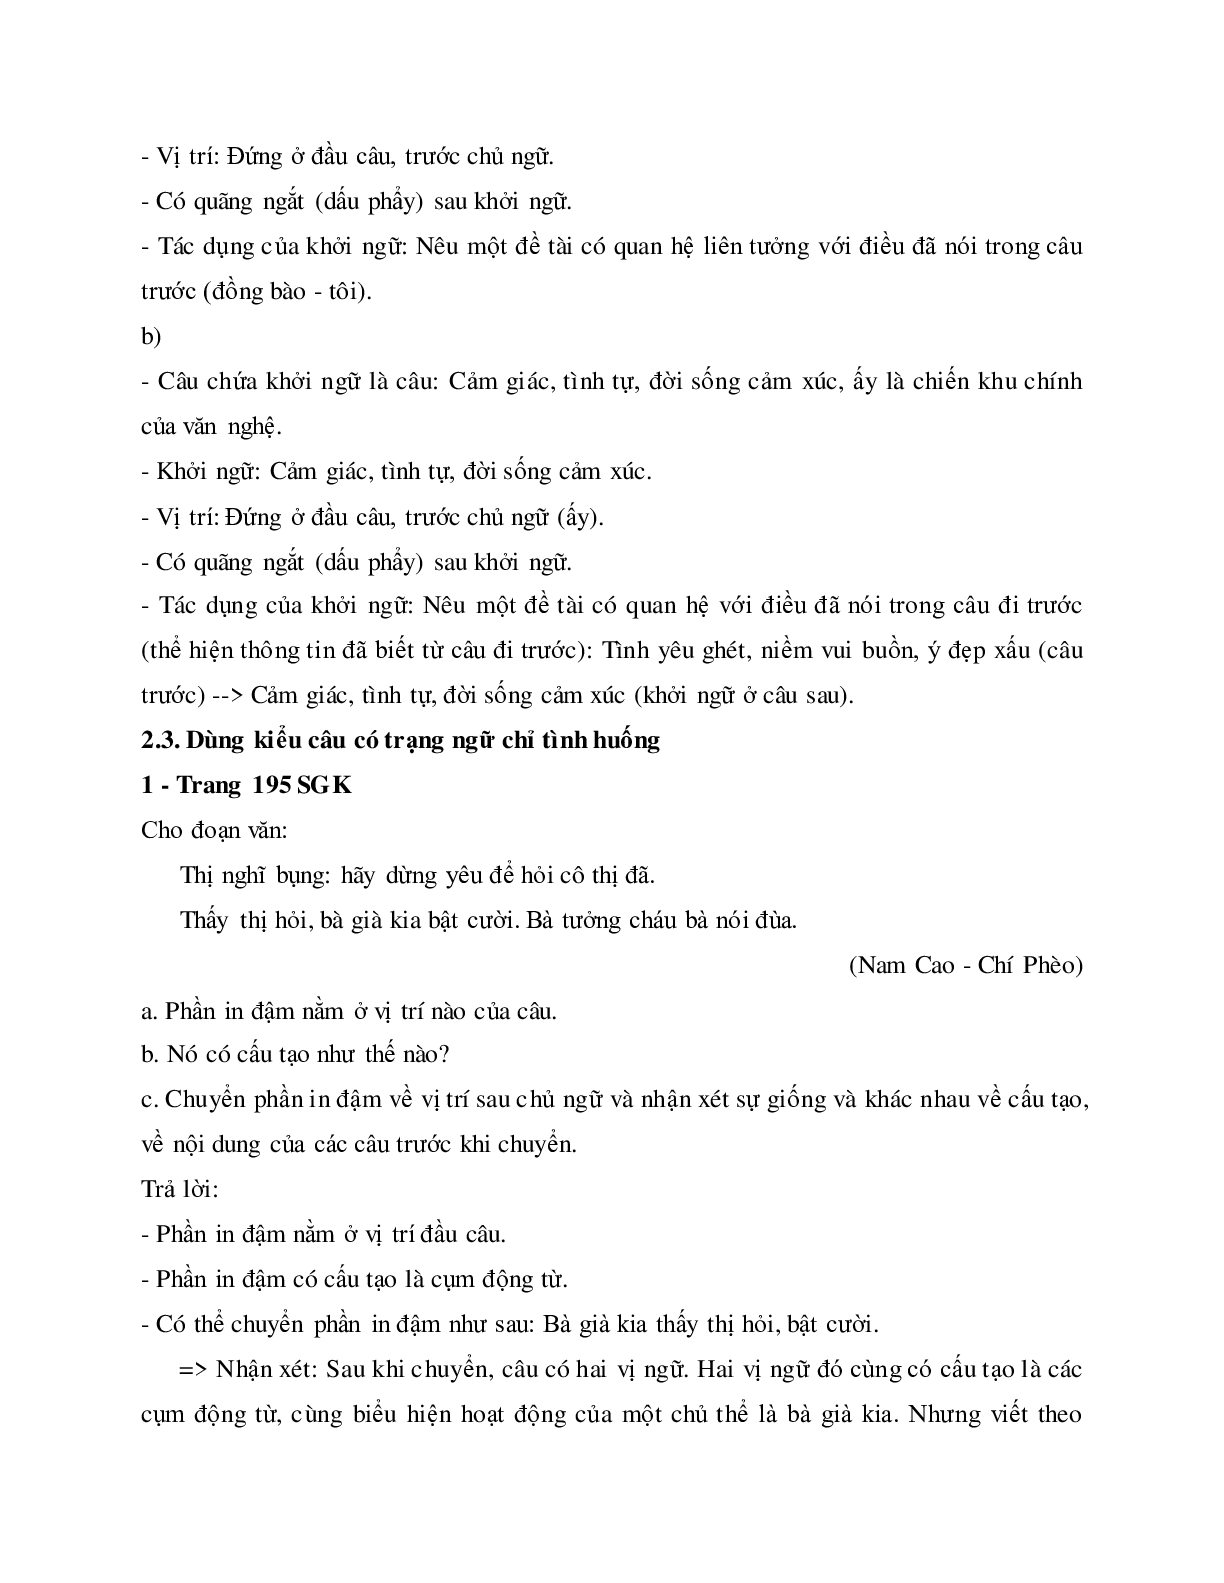 Soạn bài Thực hành về sử dụng một số kiểu câu trong văn bản - ngắn nhất Soạn văn 11 (trang 7)